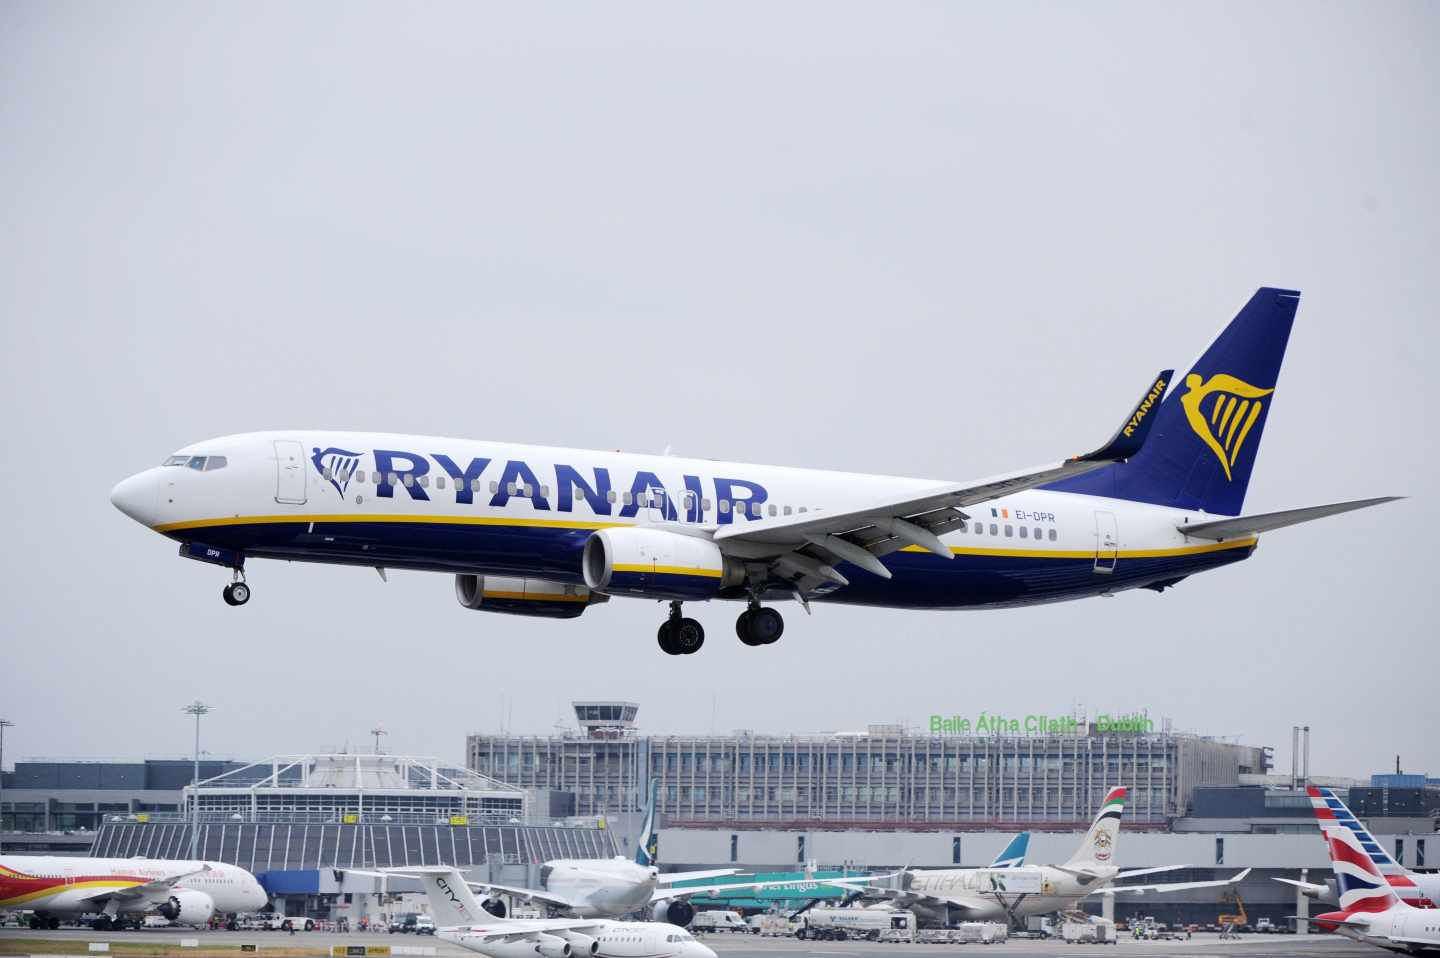 Aterrizaje de un avión de Ryanair.